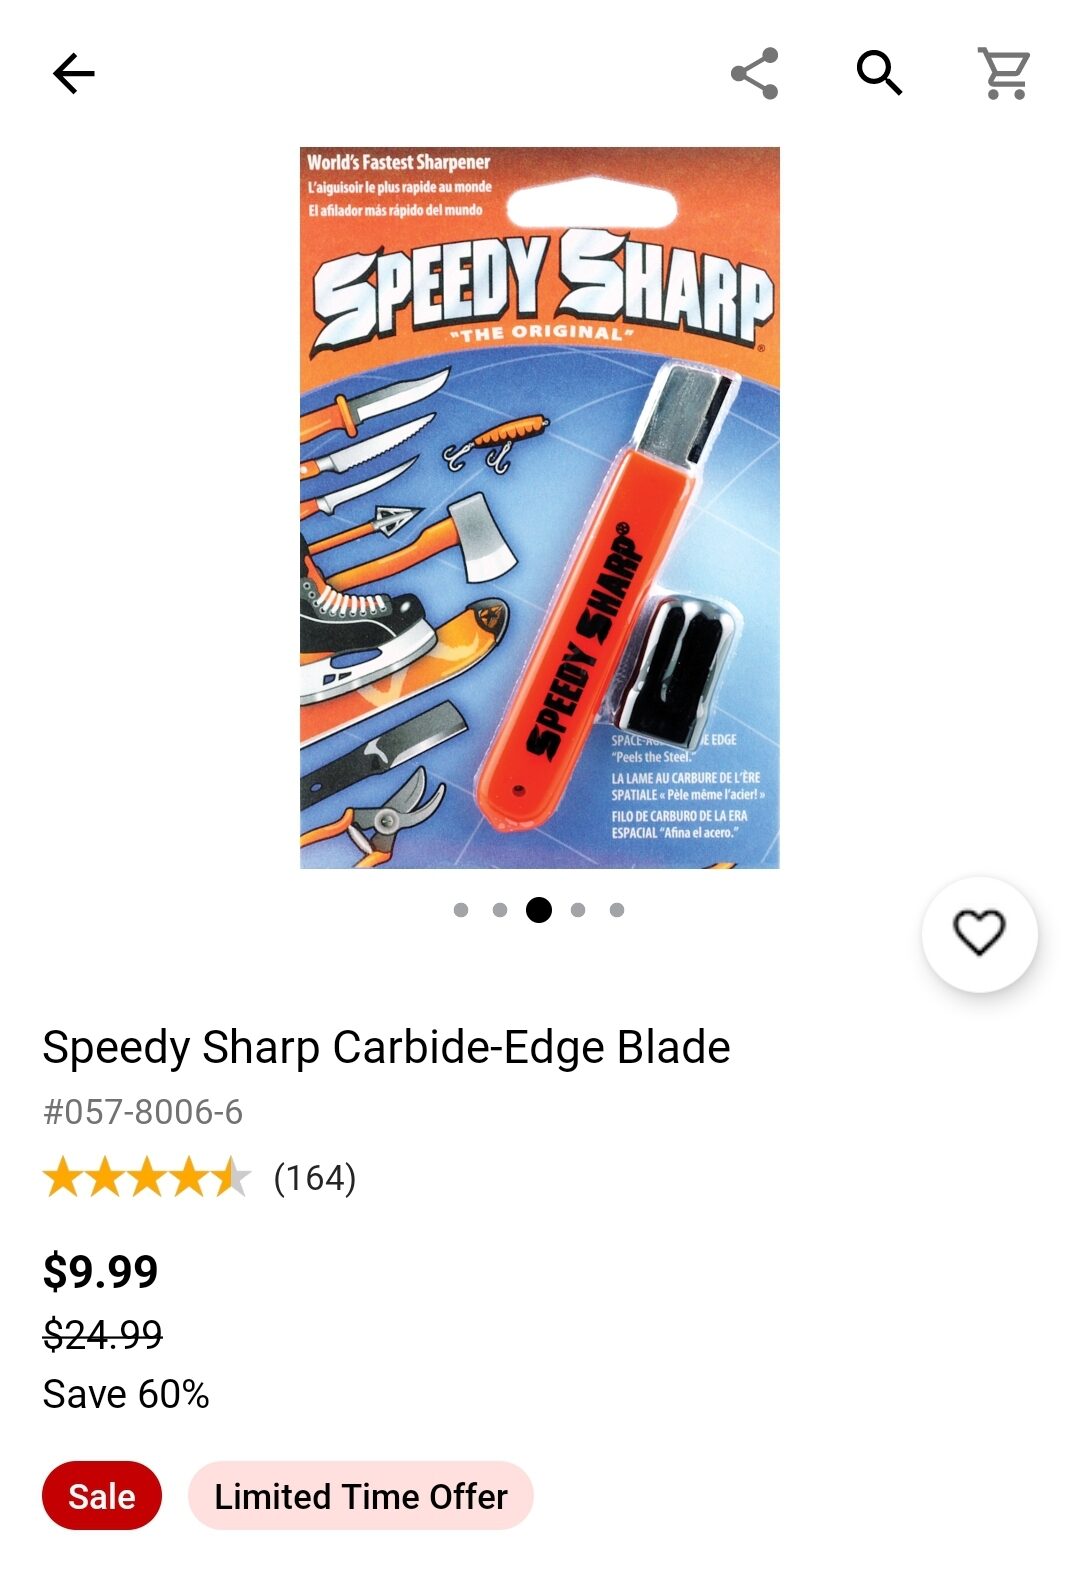 Speedy Sharp - The Fastest Sharpener In The World 